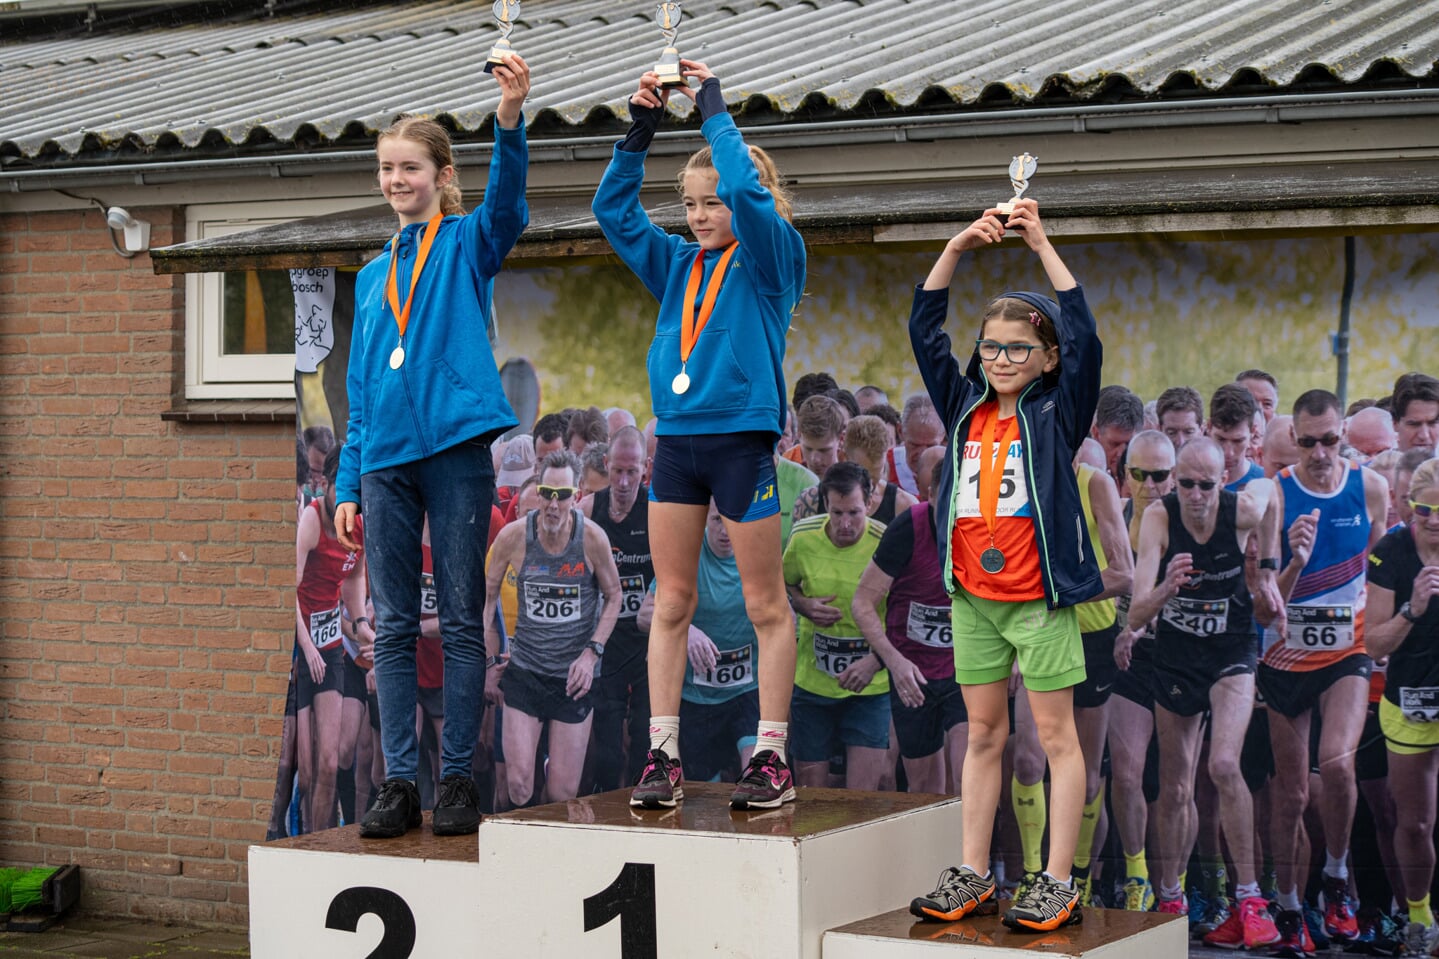 TVE sport Wijboschloop, jeugdloop meisjes: 1. Yfke van der Star 09:11, 2. Luciel van Duivenbode 10:34, 3. Melina Zwart 10:44